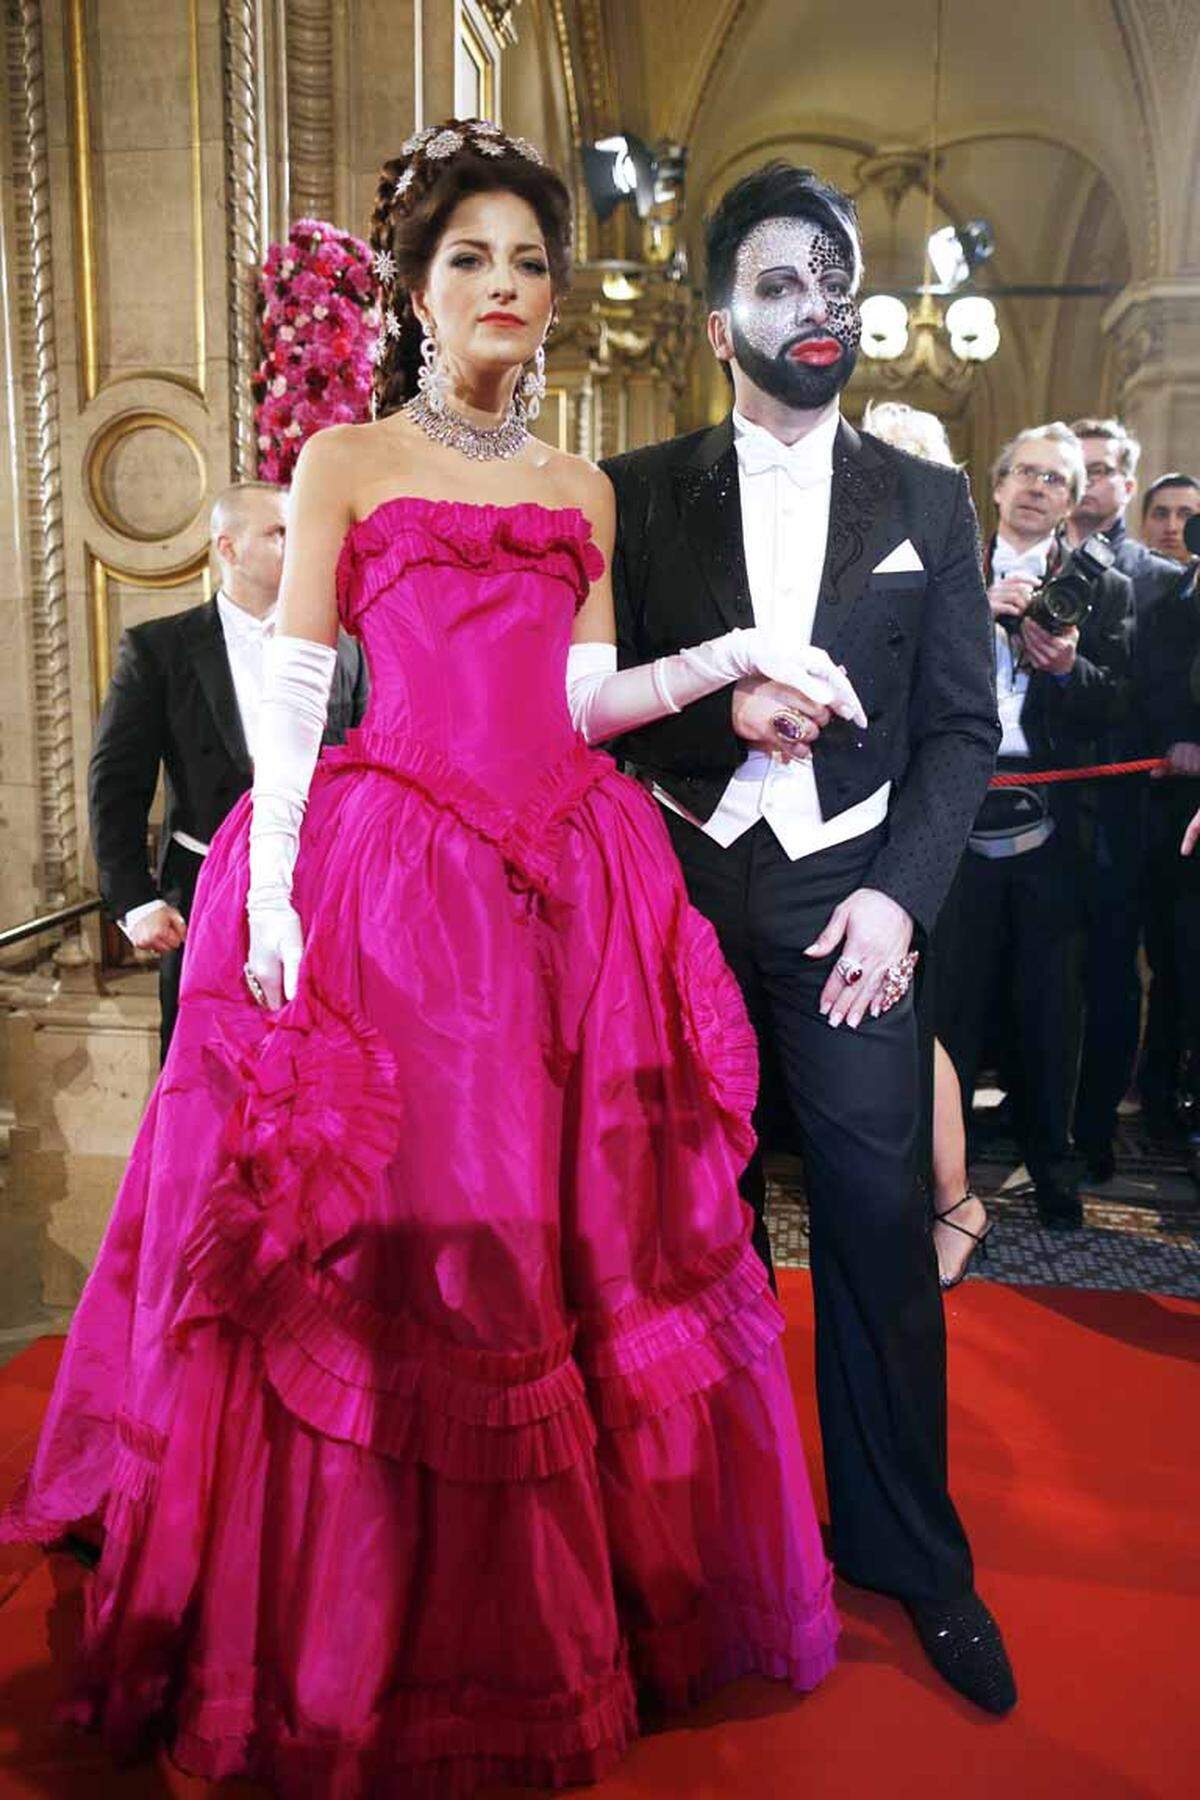 Der deutsche Modedesigner Harald Glööckler  gab mit seiner "Sisi", Xenia "Prinzessin von Sachsen Herzogin zu Sachsen", einen wahrhaft pompöösen Auftritt.